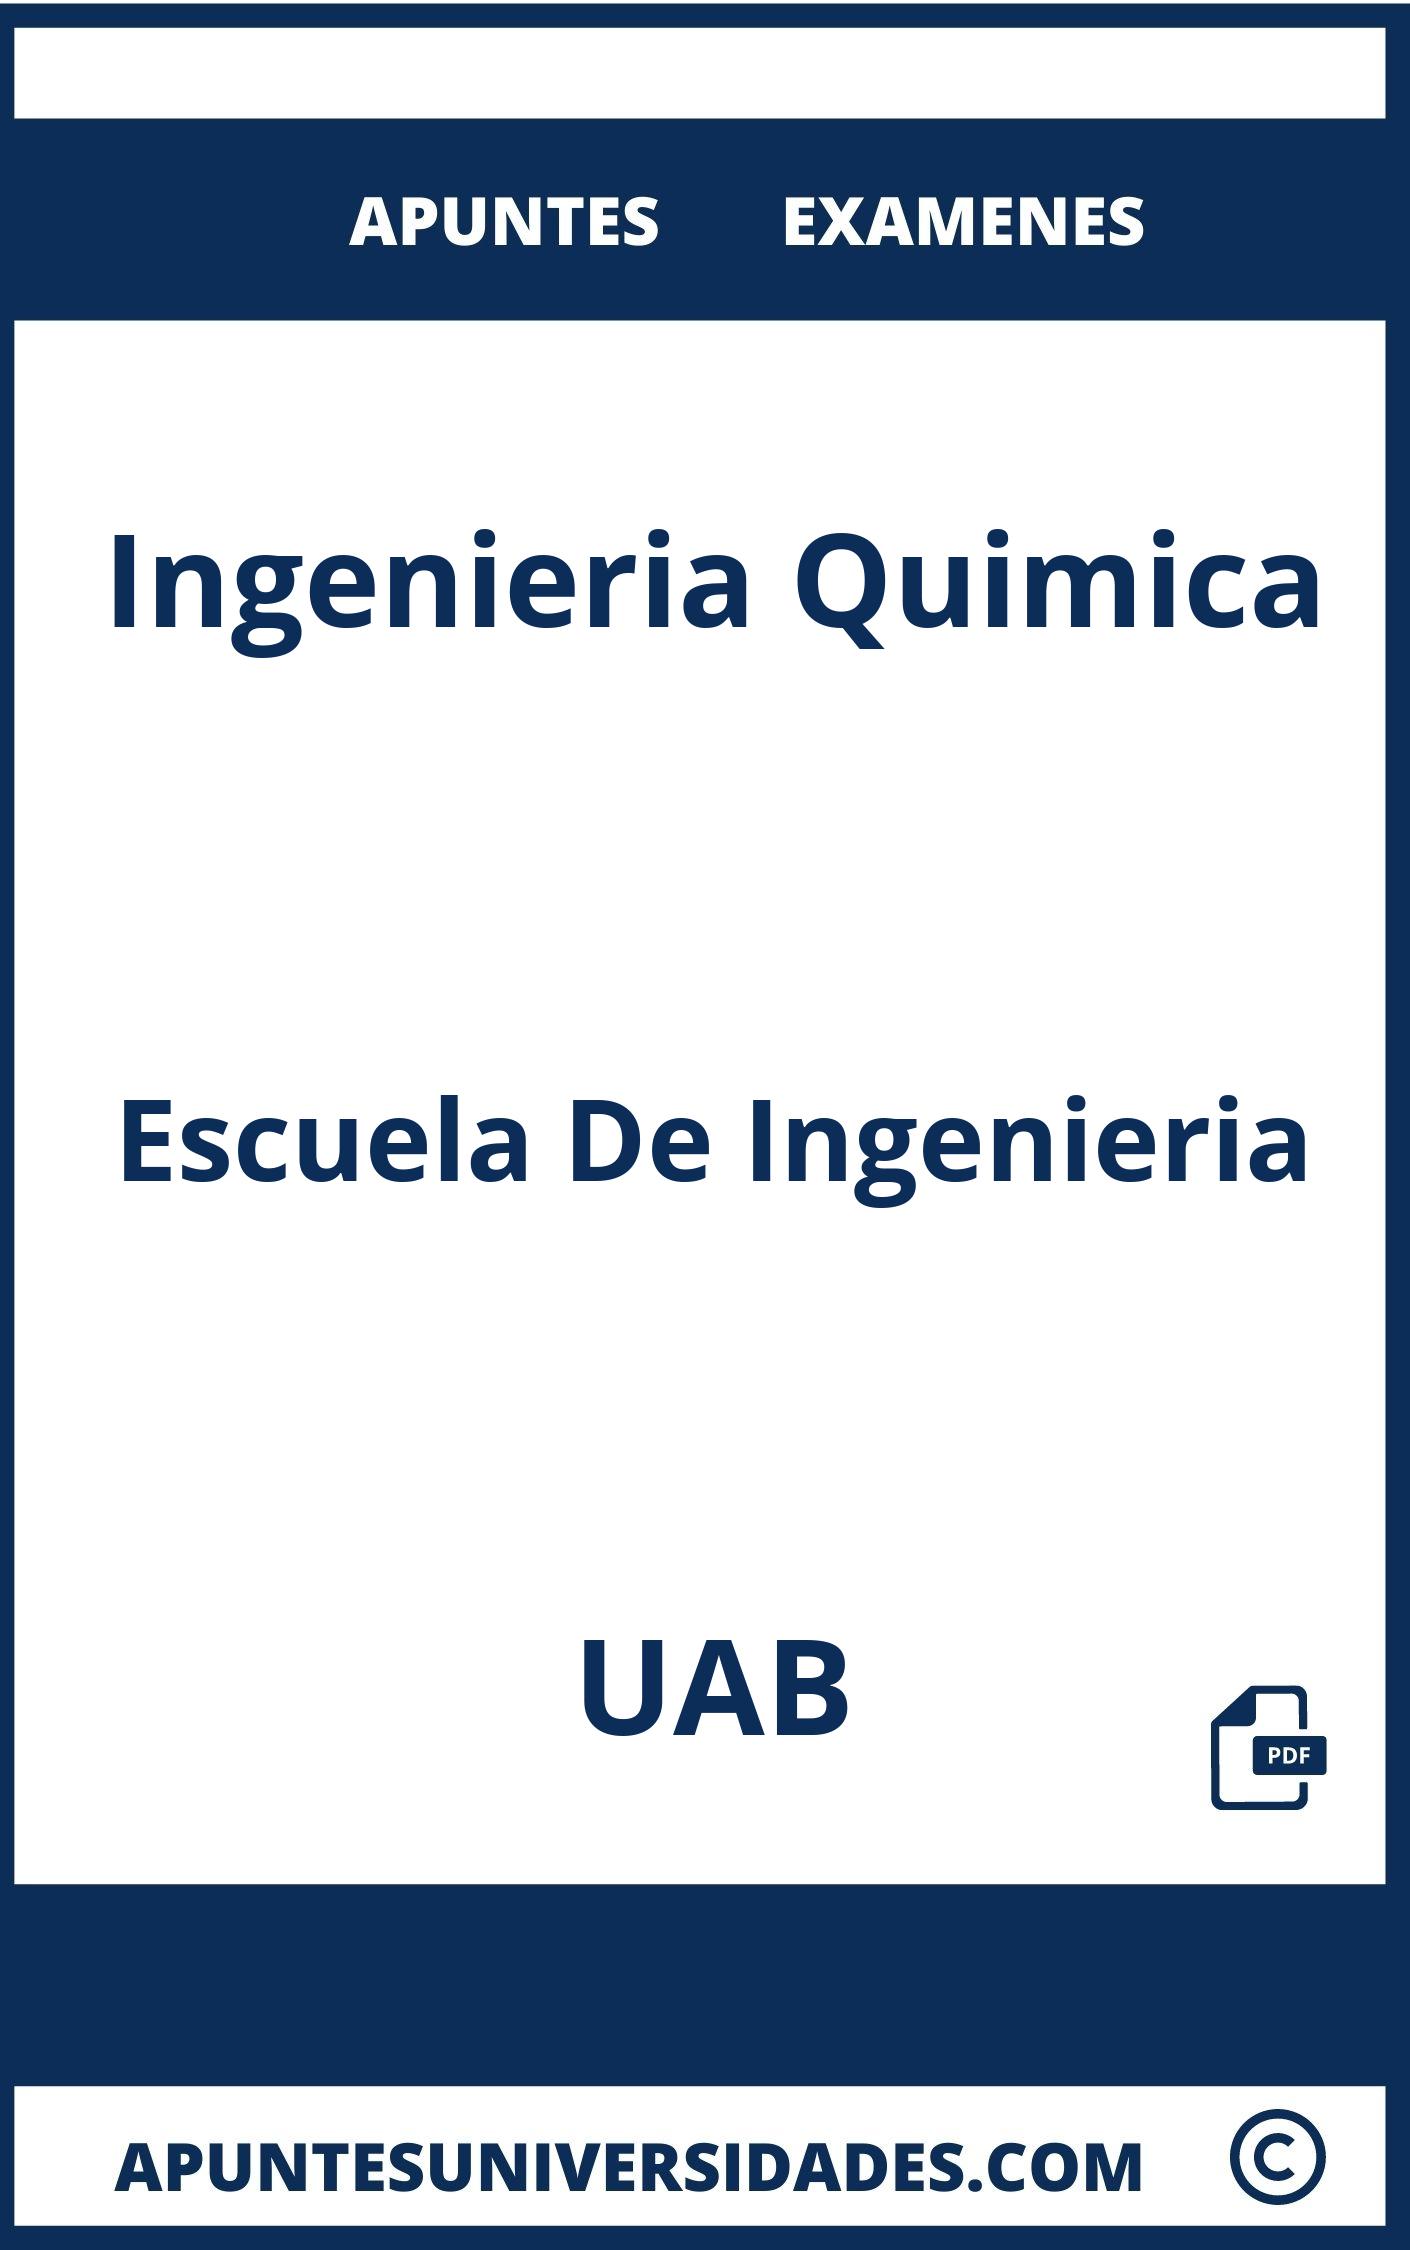 Apuntes y Examenes de Ingenieria Quimica UAB